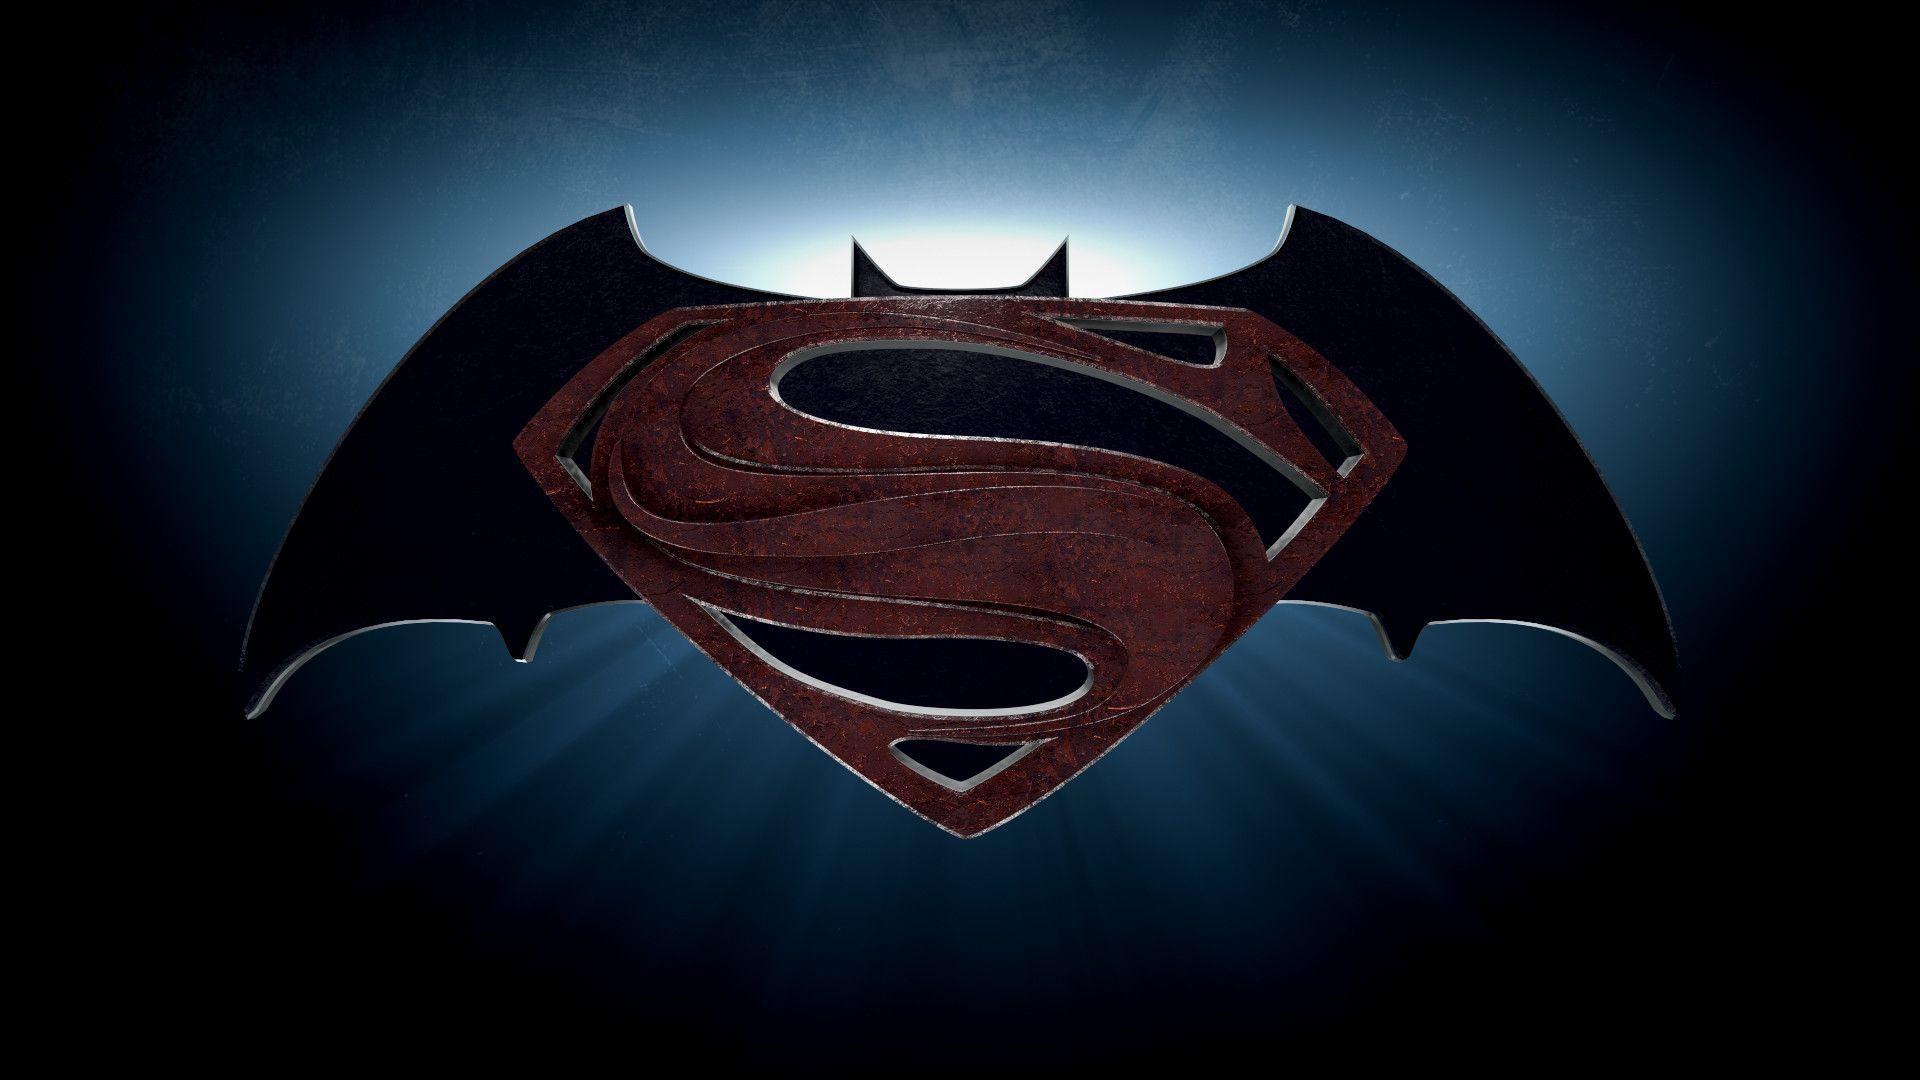 Batman vs Superman New Logo - Free Batman Vs Superman Logo Png, Download Free Clip Art, Free Clip ...